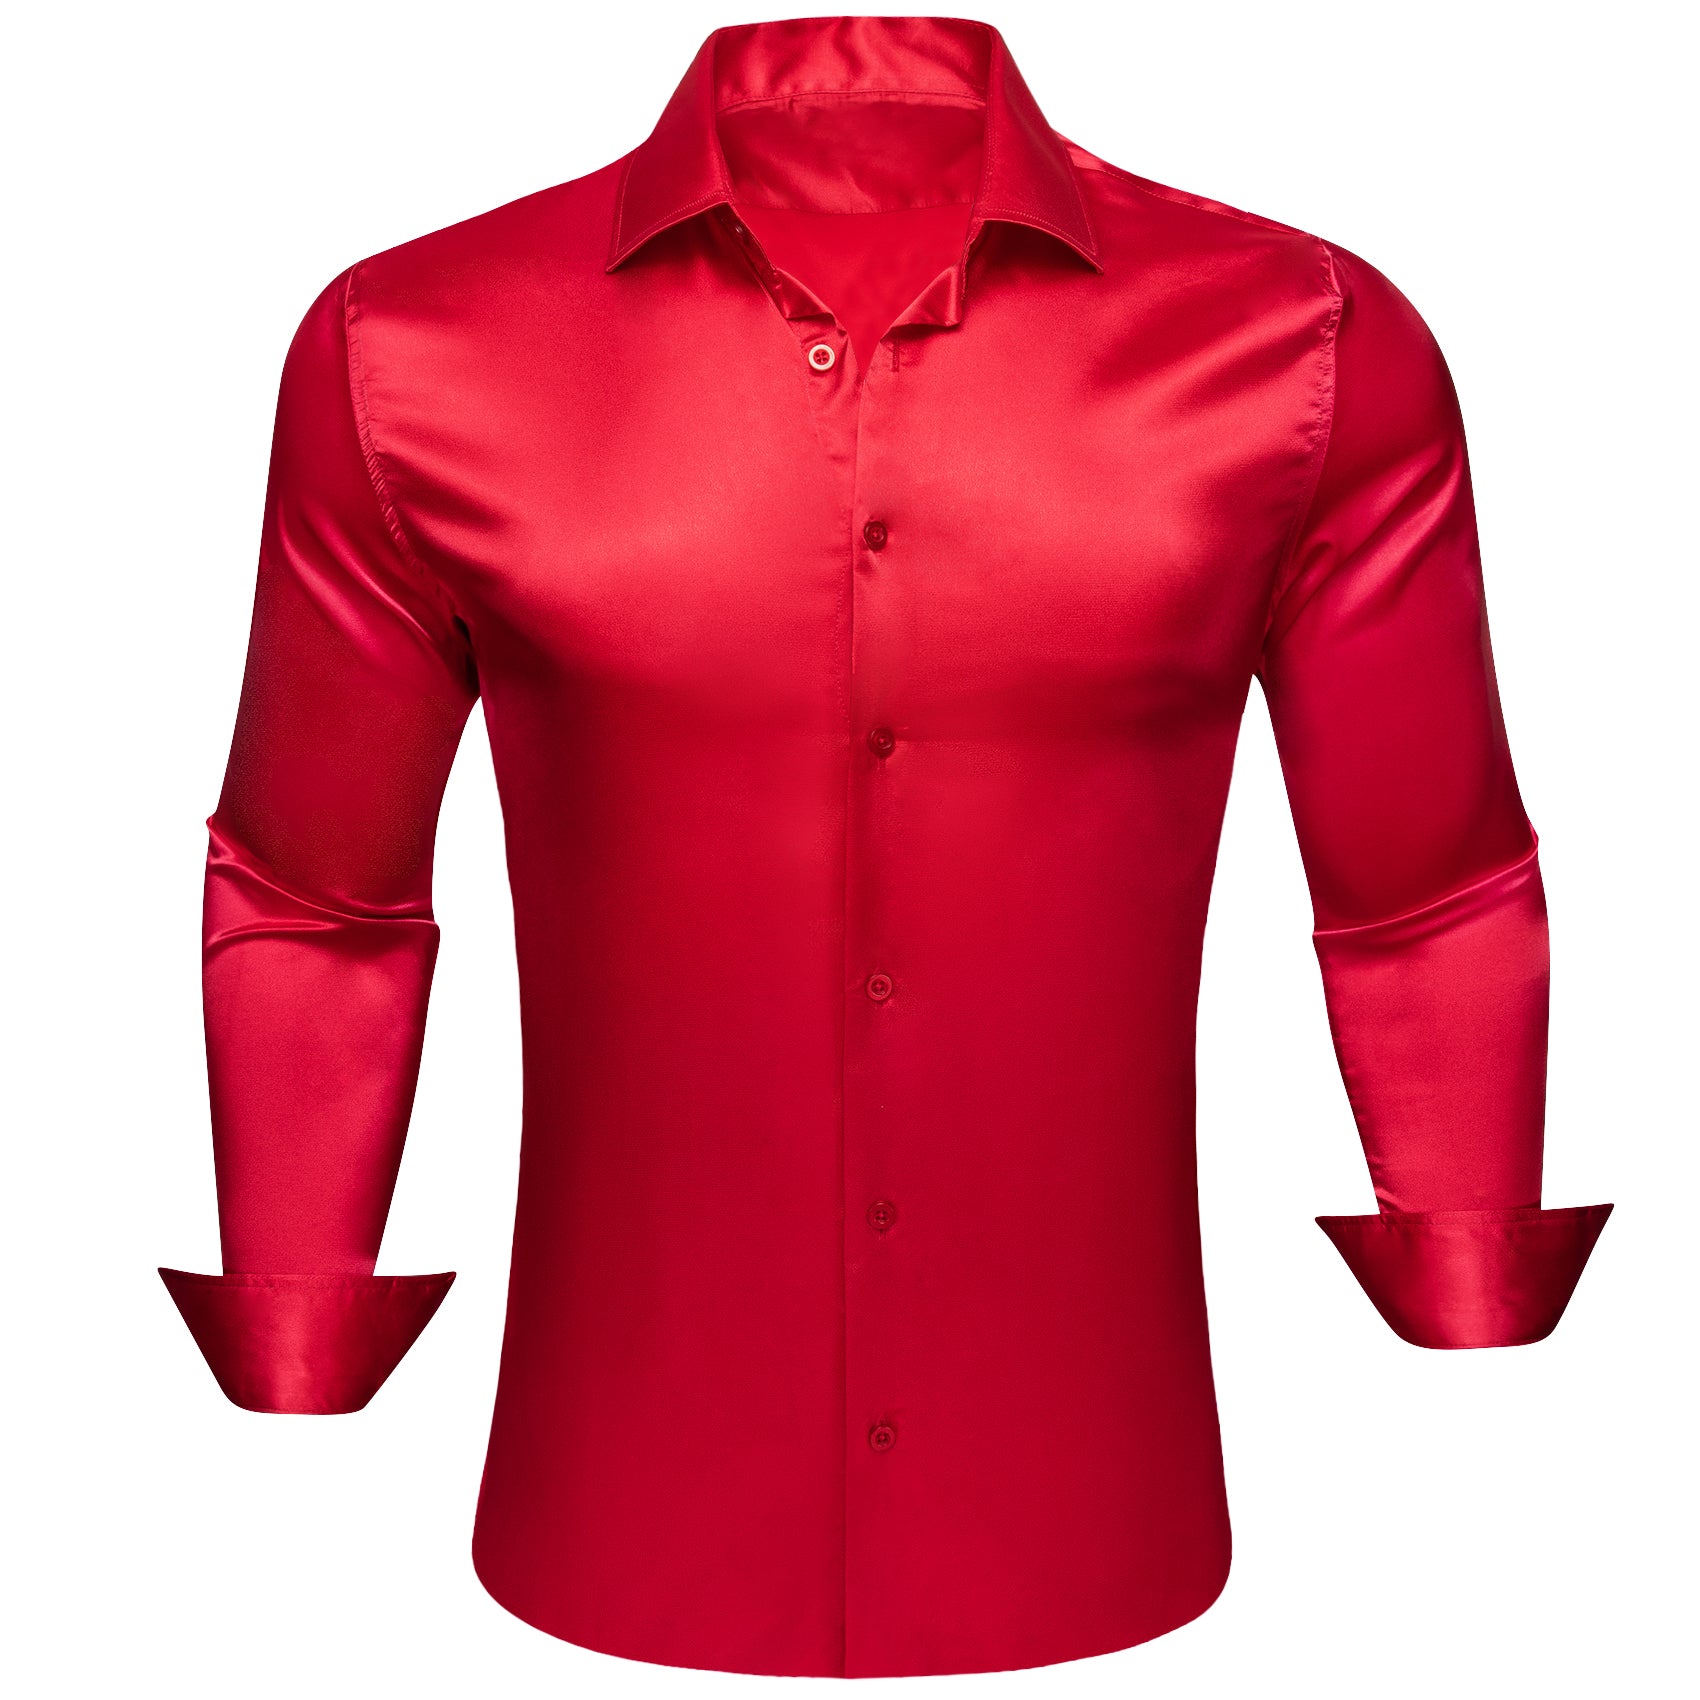 Barry.wang Crimson Solid Silk Men's Long Sleeve Shirt